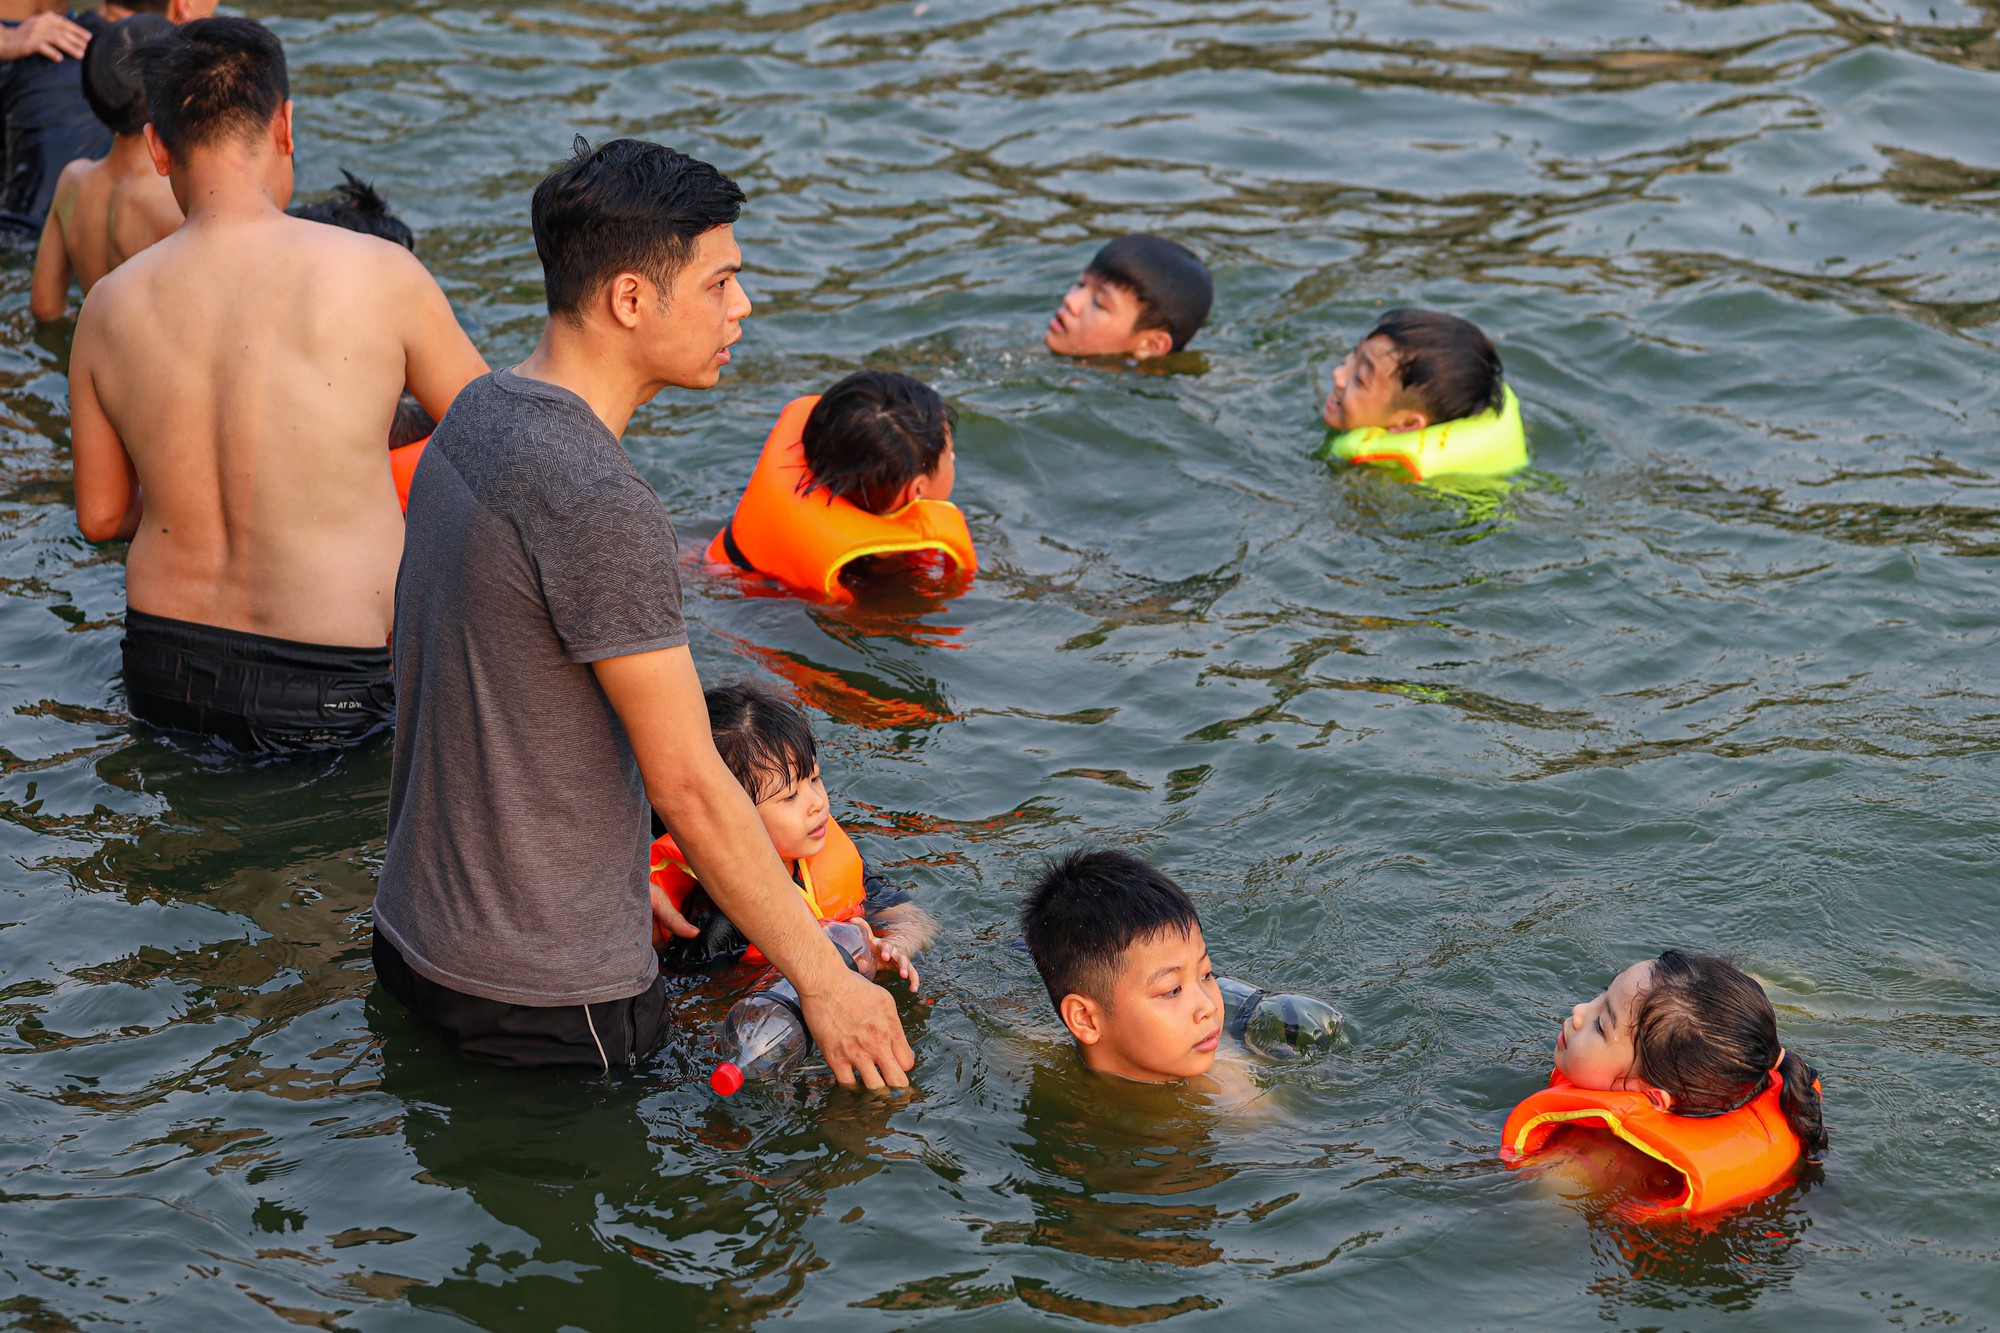 Hà Nội: Ao làng trở thành bể bơi, người dân thích thú ngâm mình “giải nhiệt” - Ảnh 5.